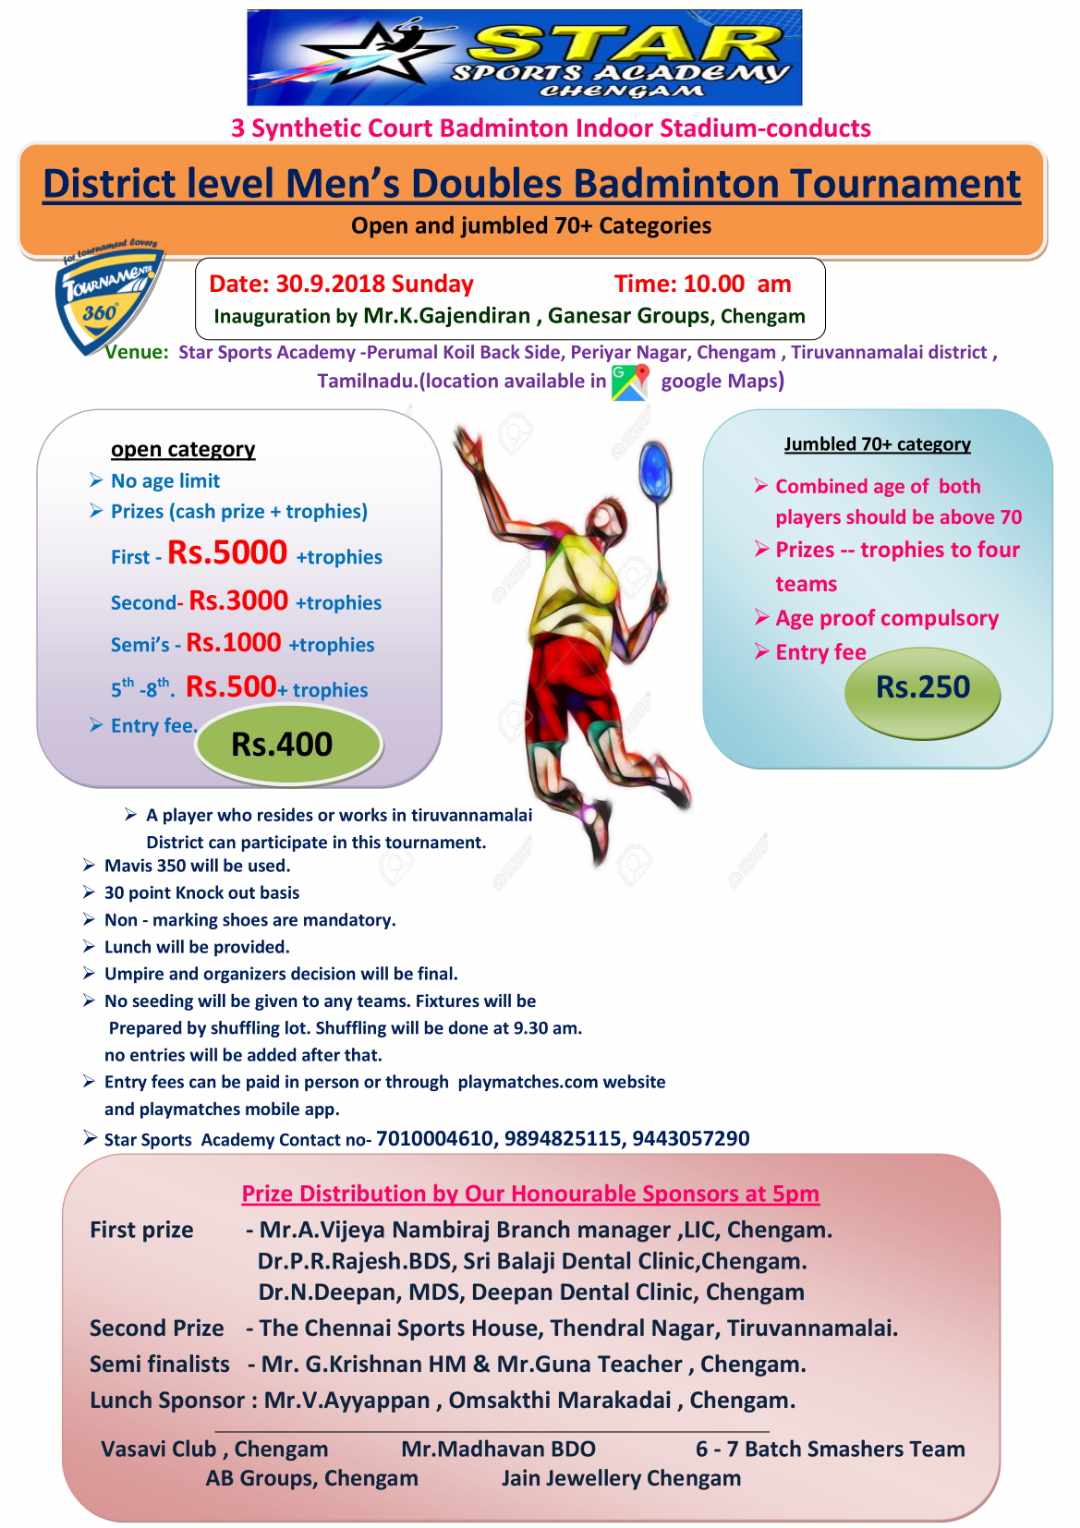 Men's Doubles Badminton Tournament